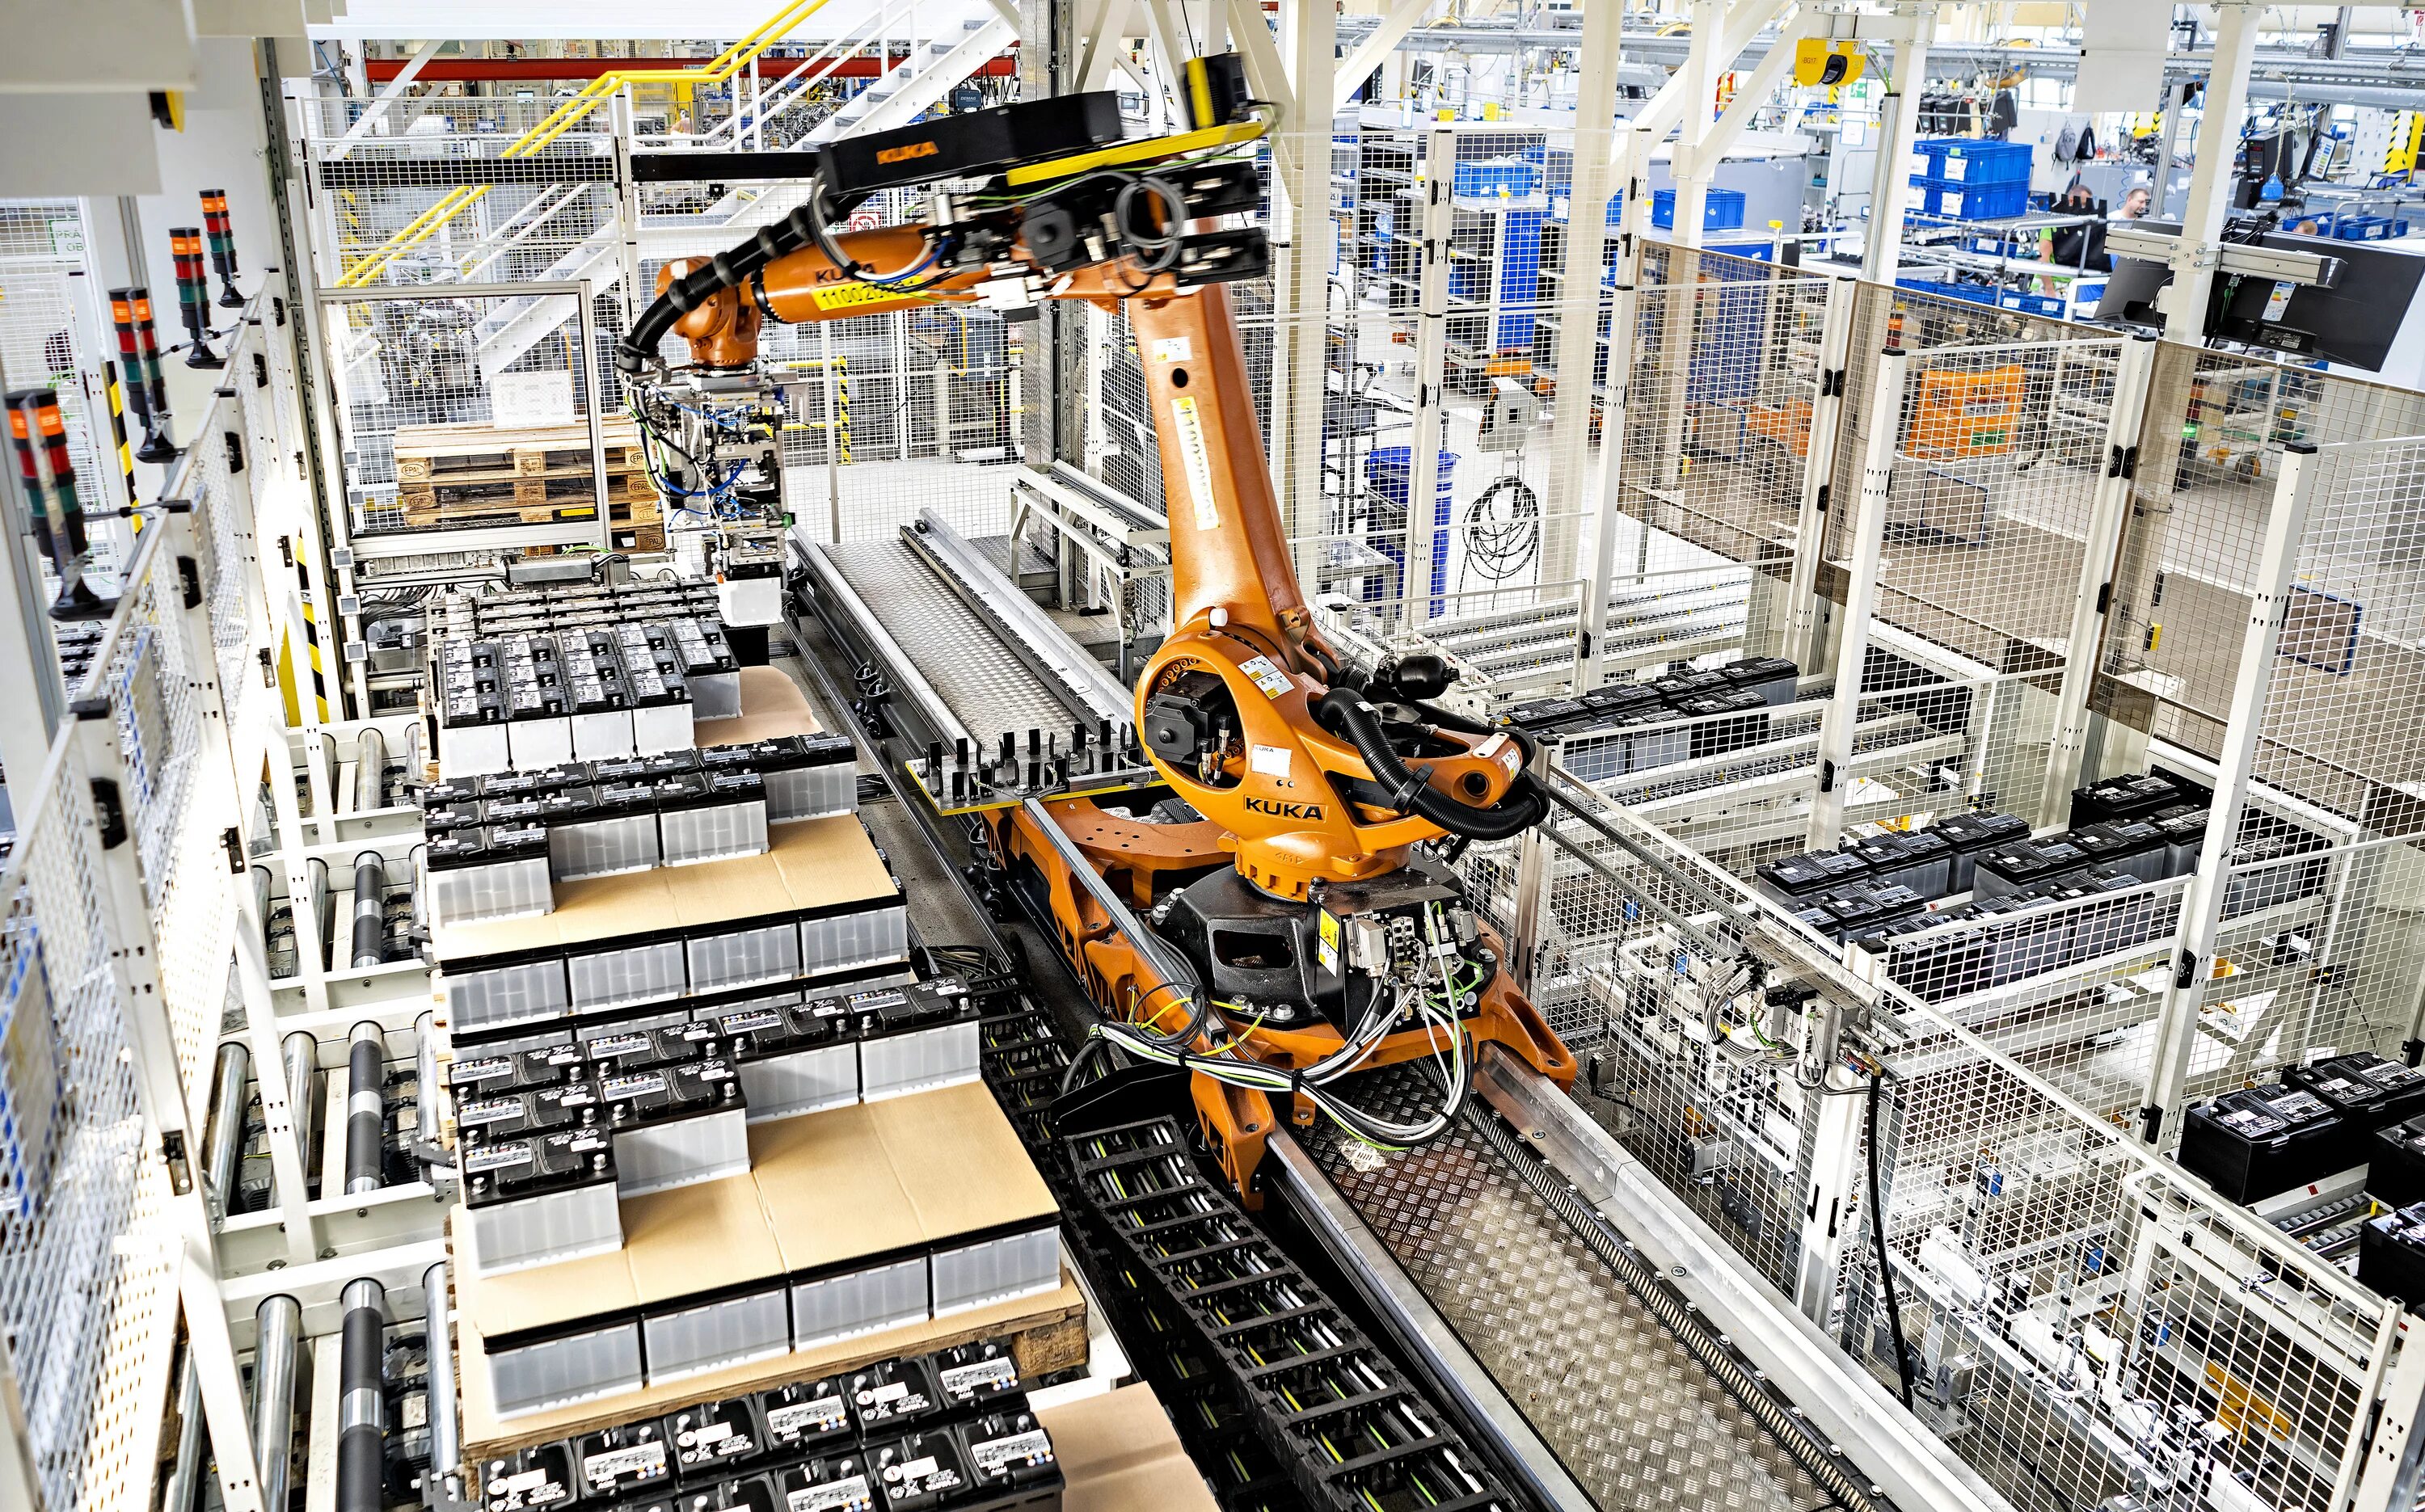 Robot factory. Автоматизированный склад. Автоматизированный склад будущего. Промышленные роботы и индустрия 4.0. Автоматизированная логистика.